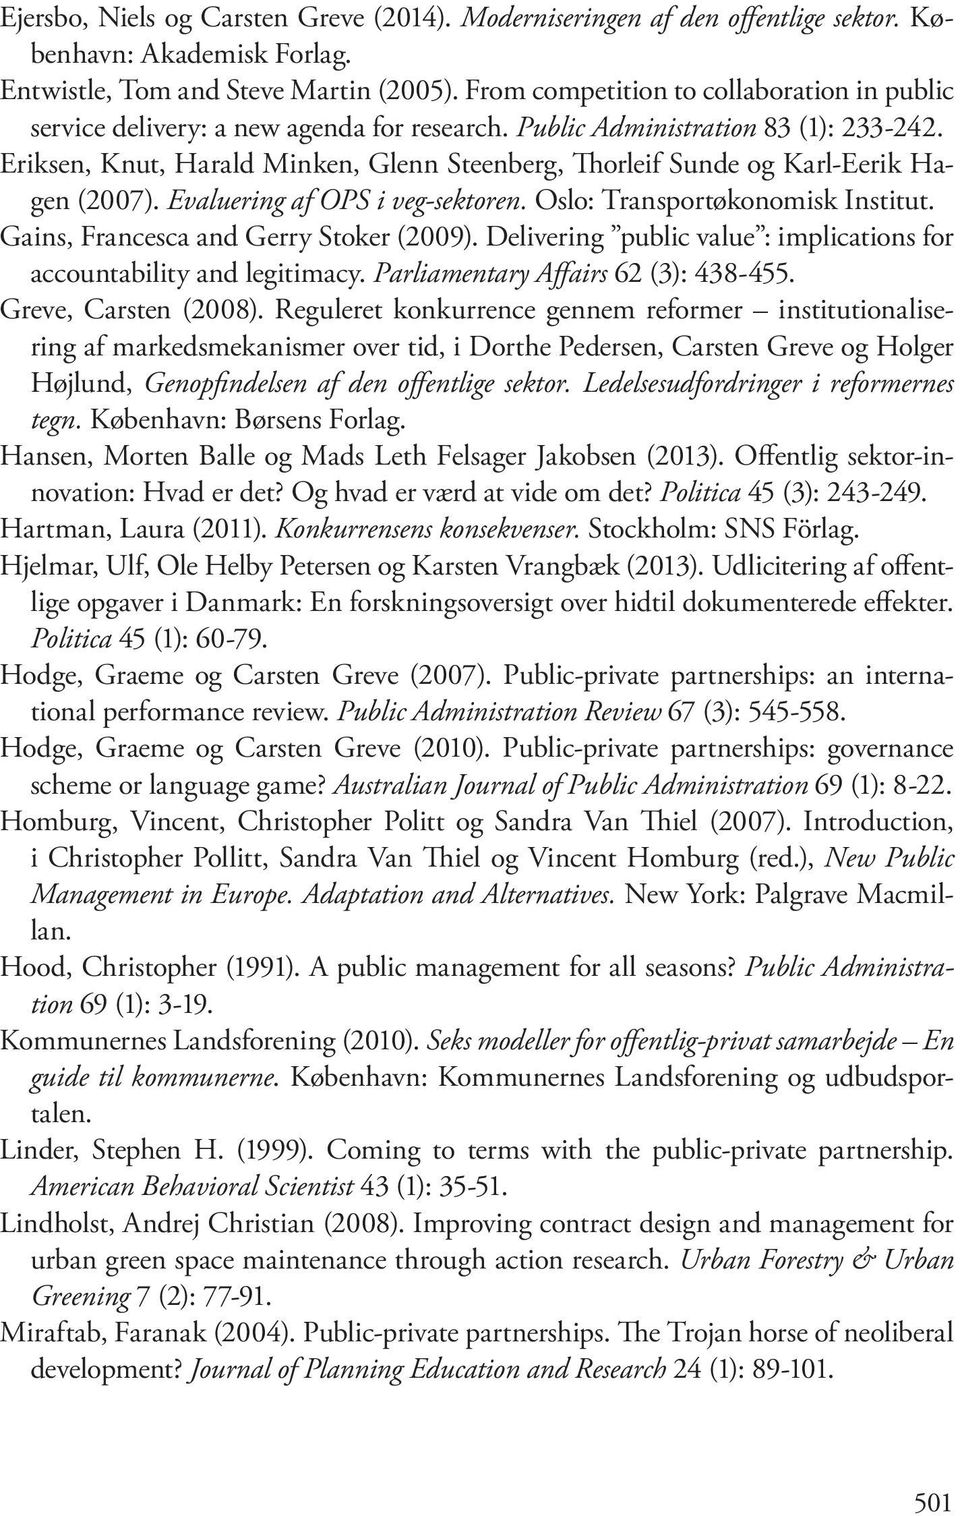 Eriksen, Knut, Harald Minken, Glenn Steenberg, Thorleif Sunde og Karl-Eerik Hagen (2007). Evaluering af OPS i veg-sektoren. Oslo: Transportøkonomisk Institut. Gains, Francesca and Gerry Stoker (2009).